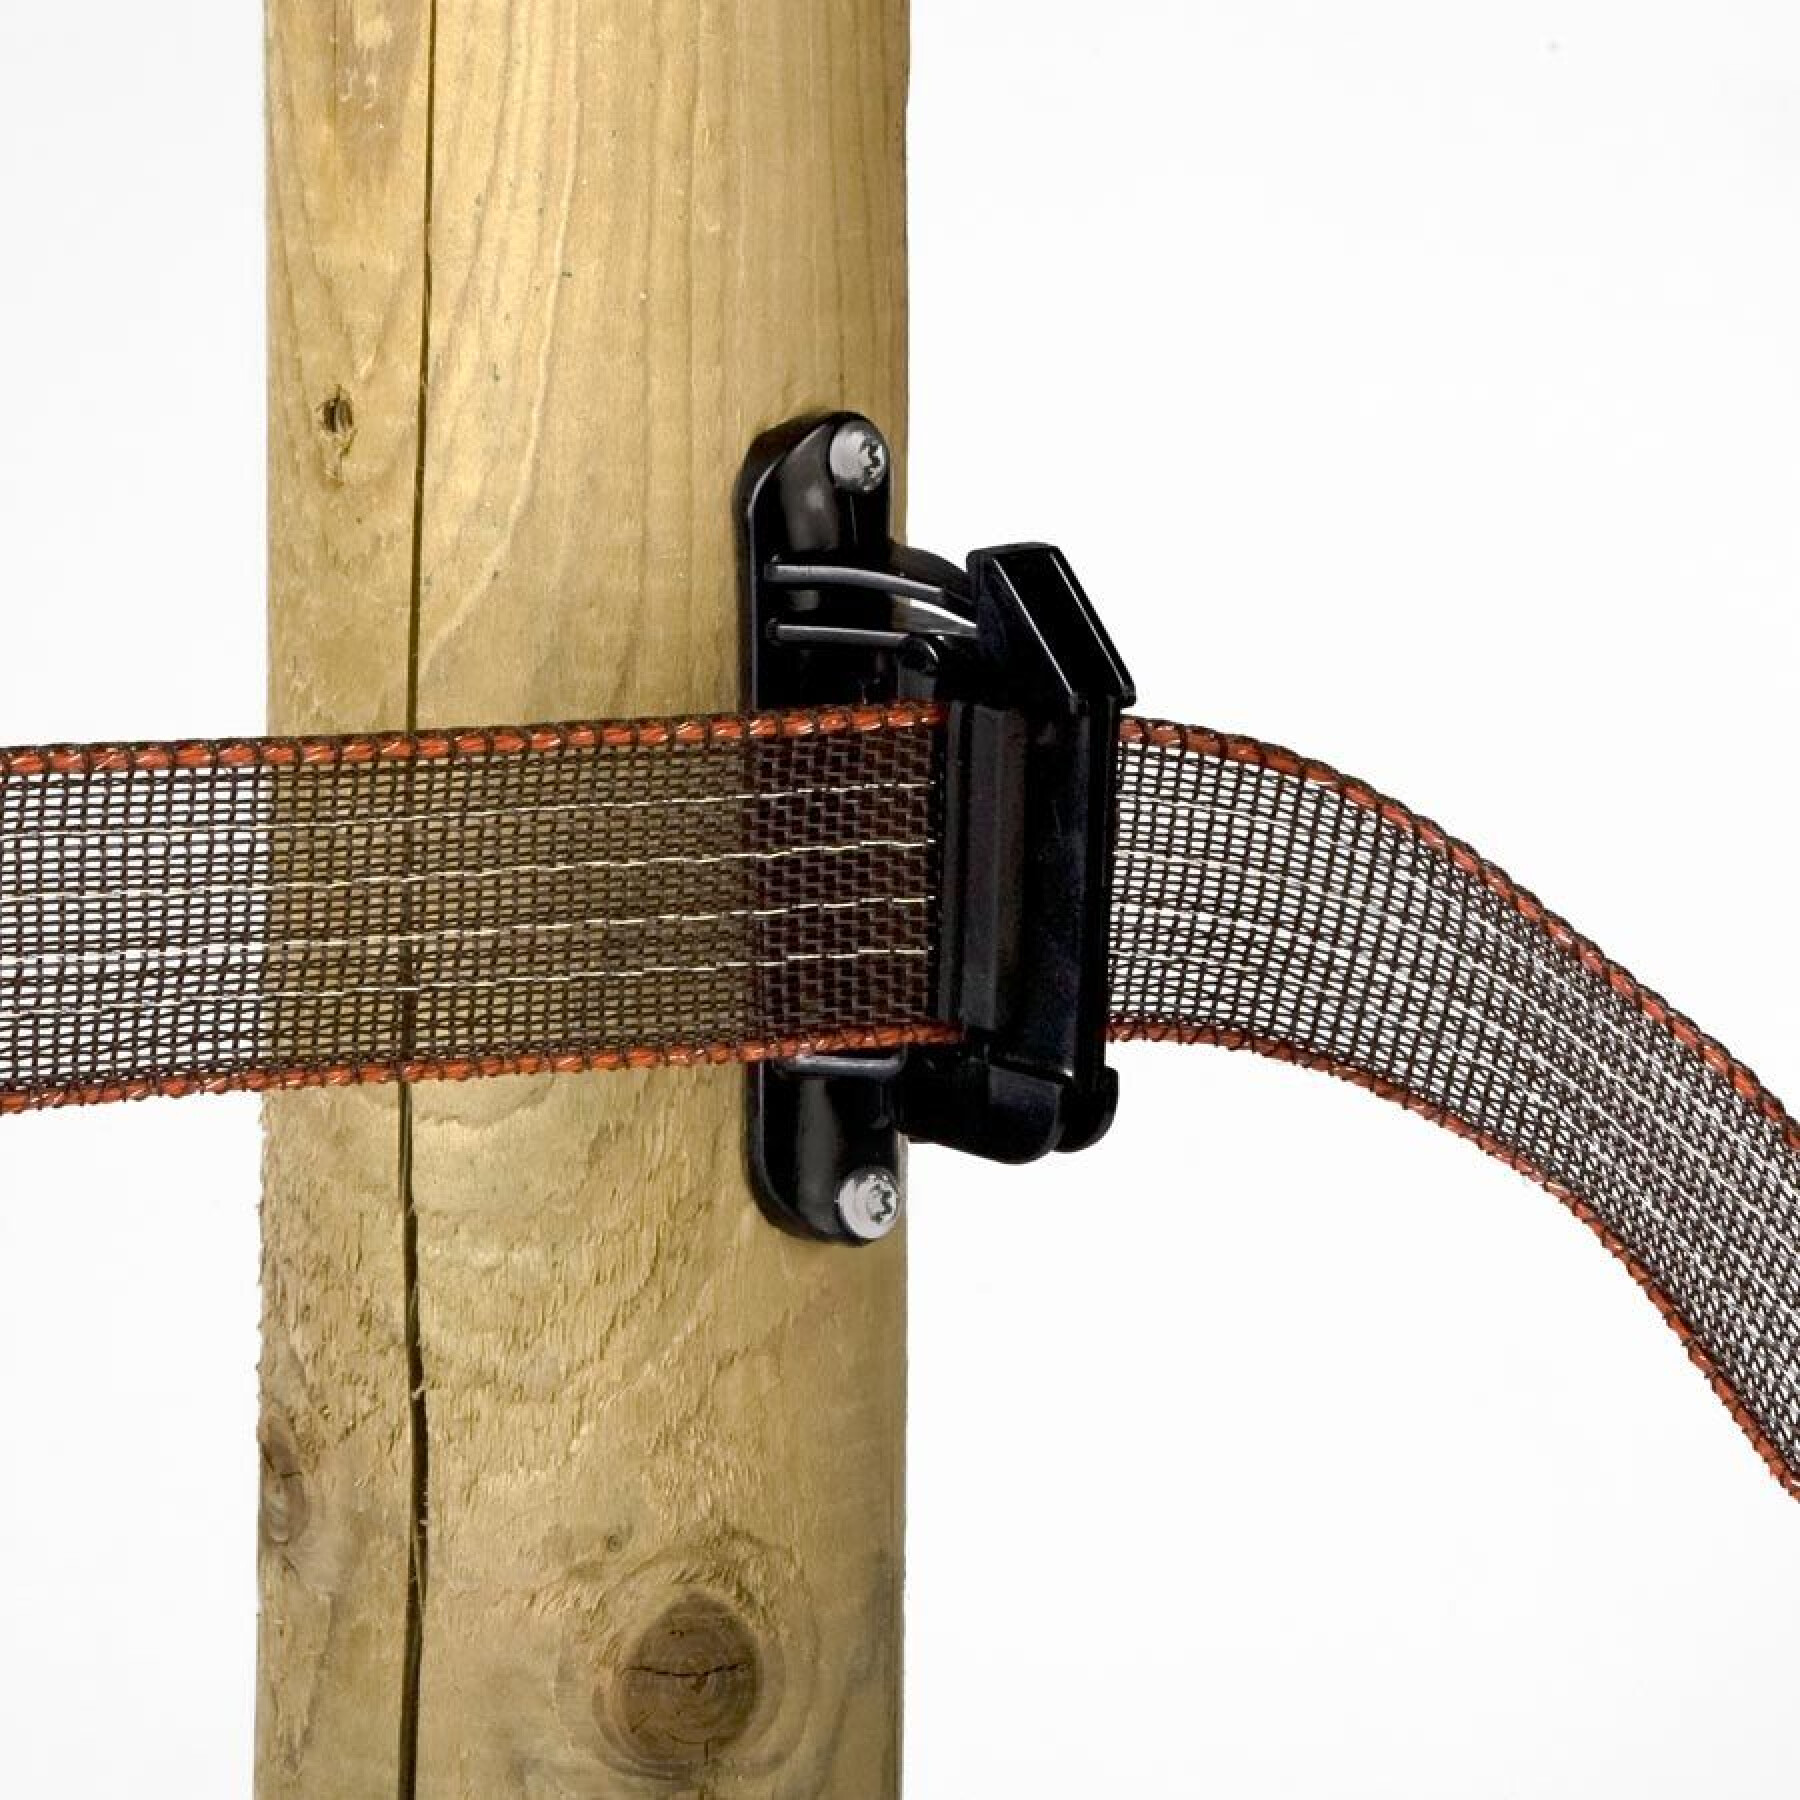 Aisladores para cinta turbolina de cercas eléctricas Gallagher (x20)